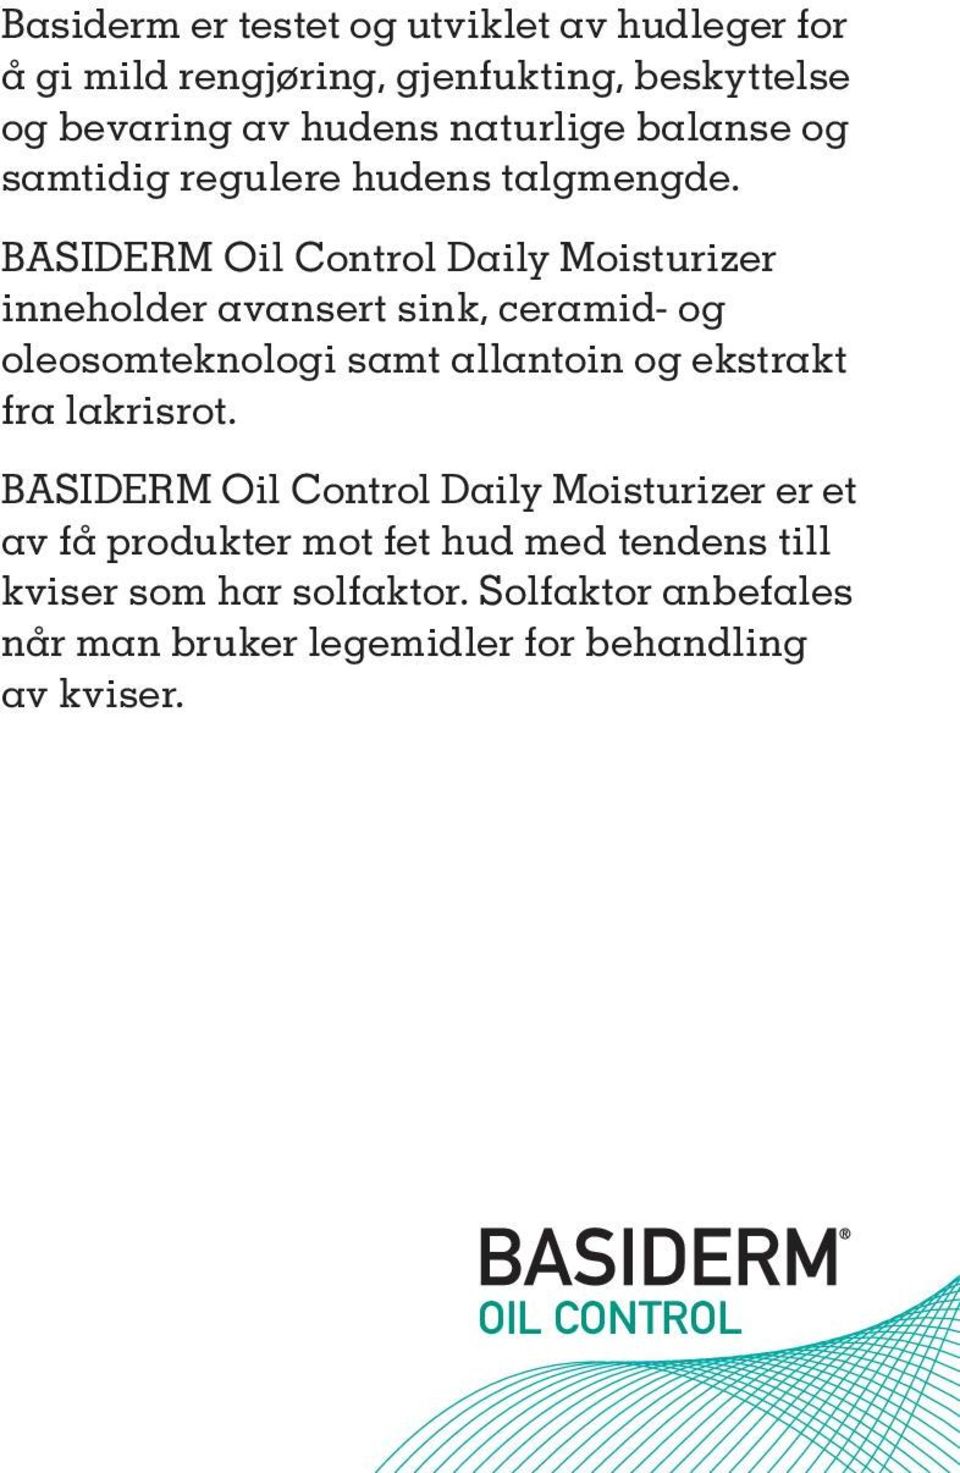 BASIDERM Oil Control Daily Moisturizer inneholder avansert sink, ceramid- og oleosomteknologi samt allantoin og ekstrakt fra